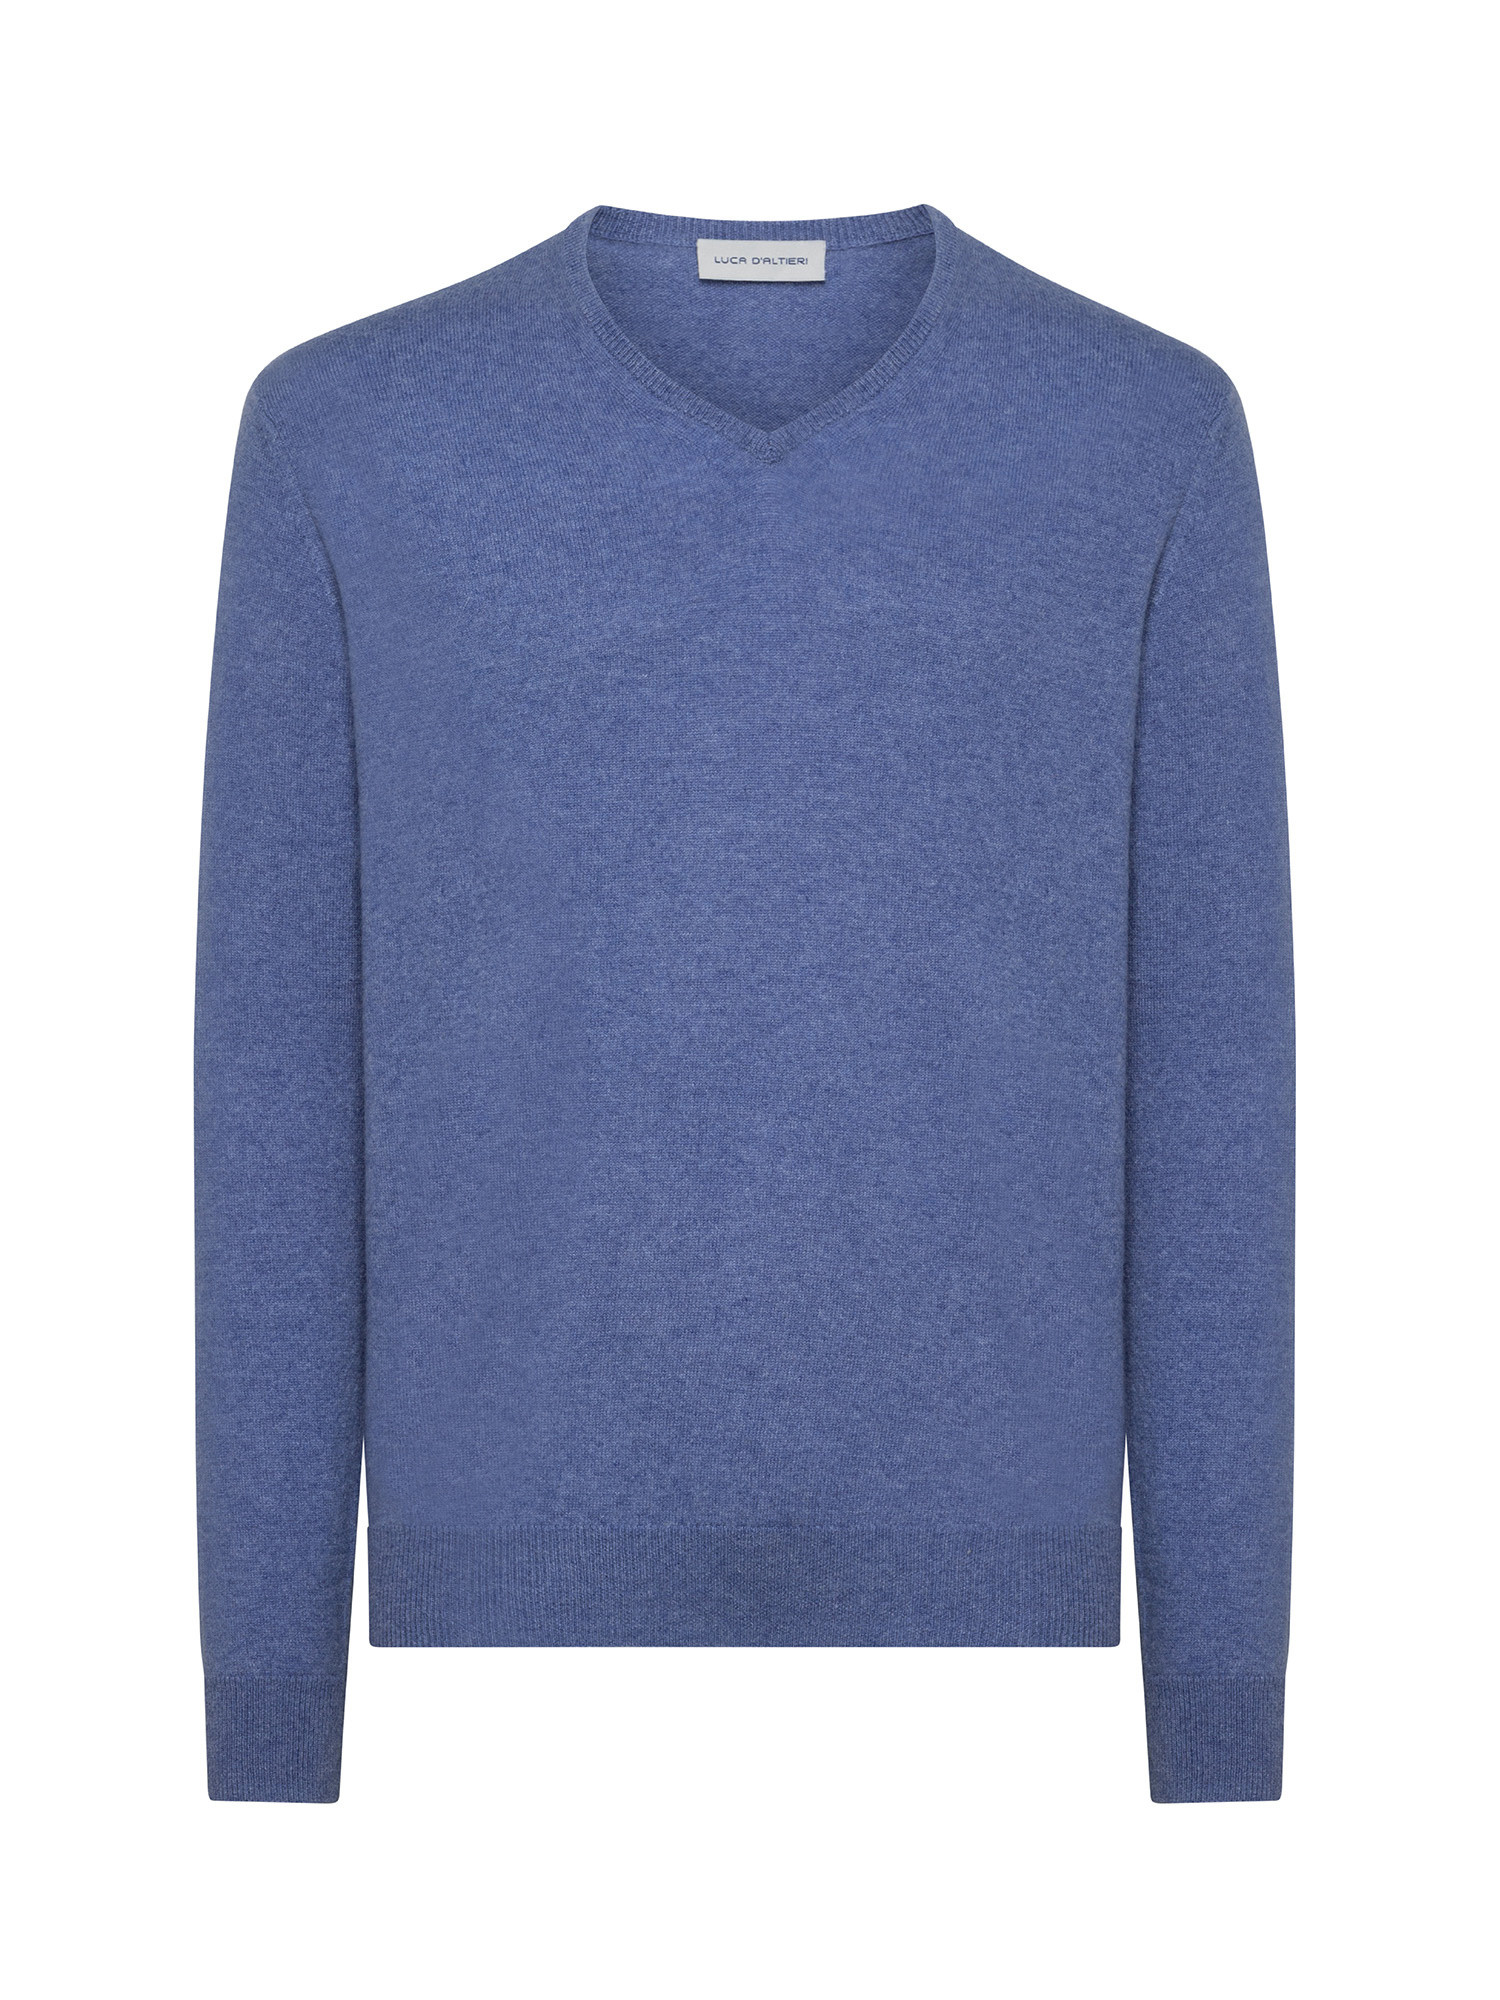 Пуловер с V-образным вырезом из чистого кашемира Luca D'Altieri, бледно-голубой пуловер с v образным вырезом из трикотажа с начесом s черный